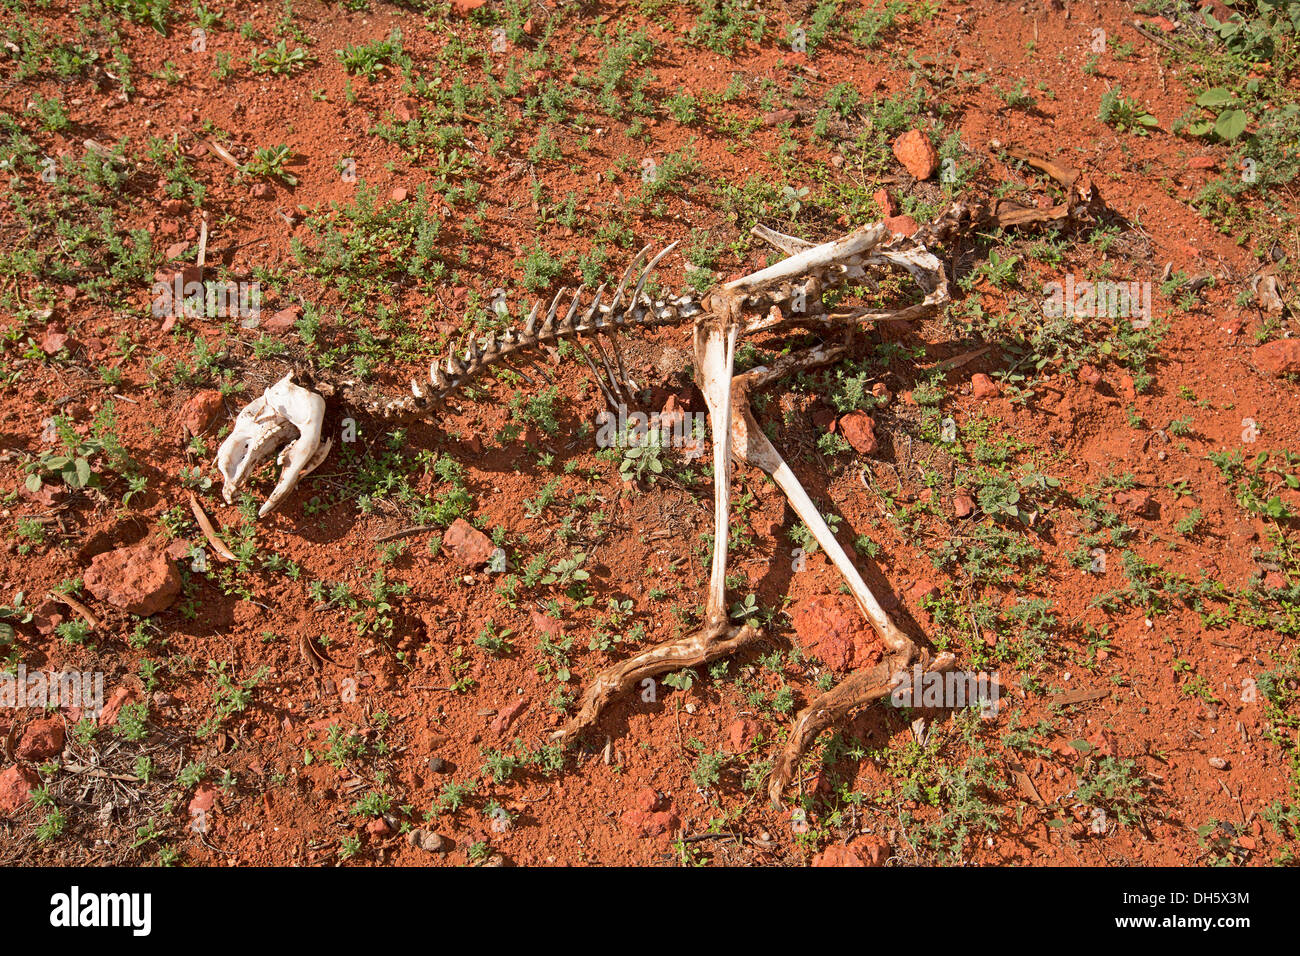 Scheletro di kangaroo sulla terra rossa di outback australiano, simbolo dei rischi i viaggiatori devono affrontare quando impreparati per un viaggio nel deserto Foto Stock